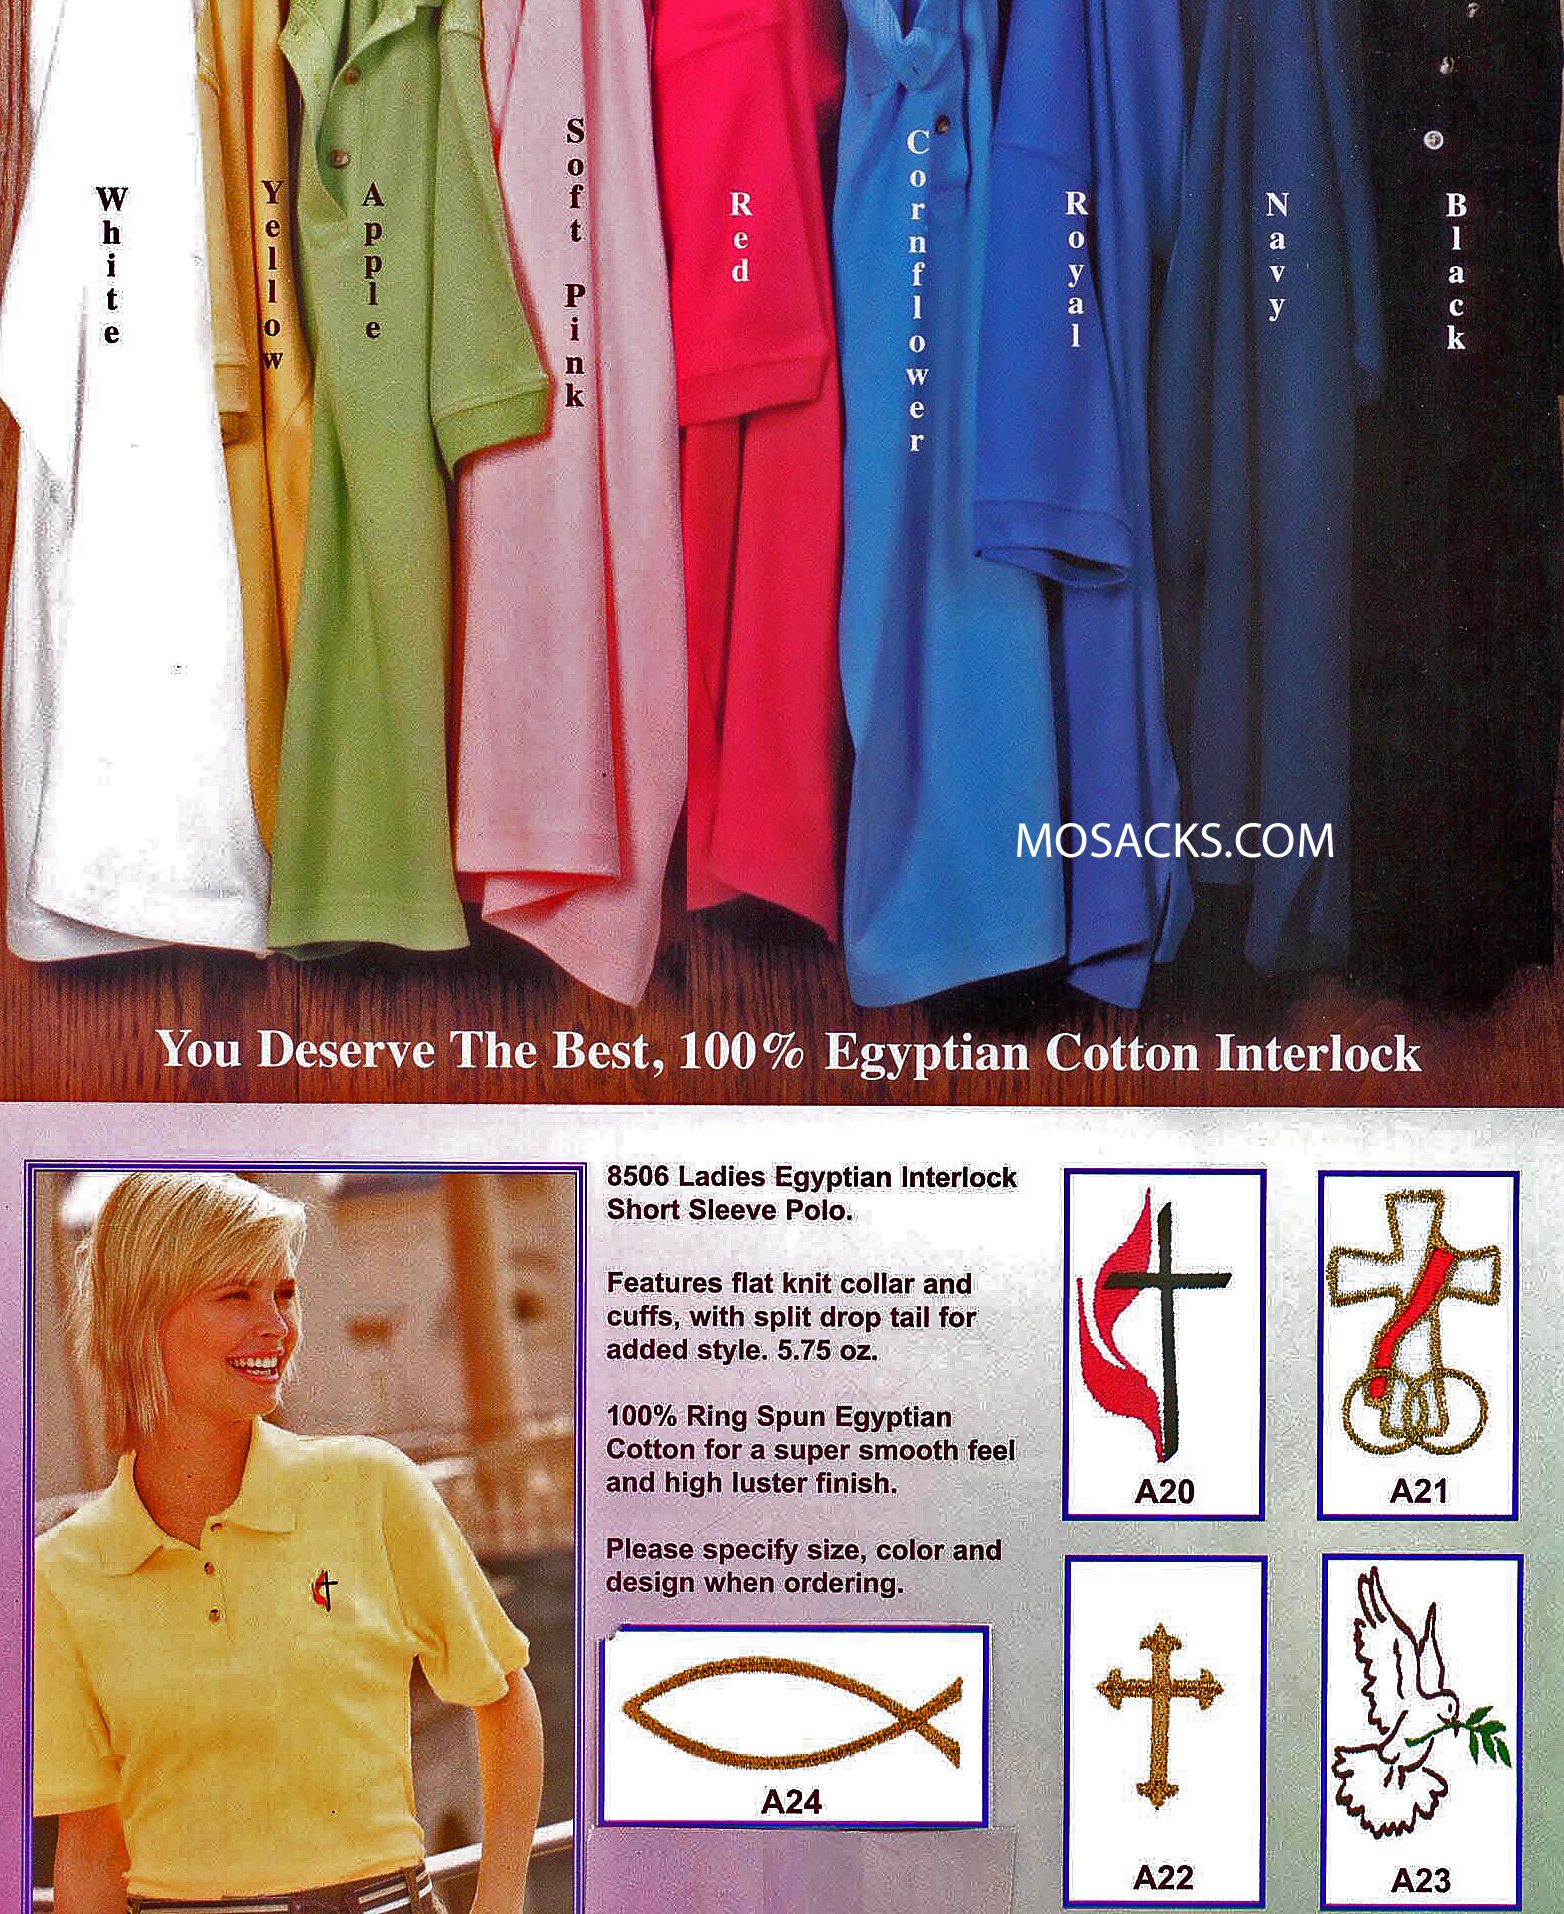 Women's Christian Shirts